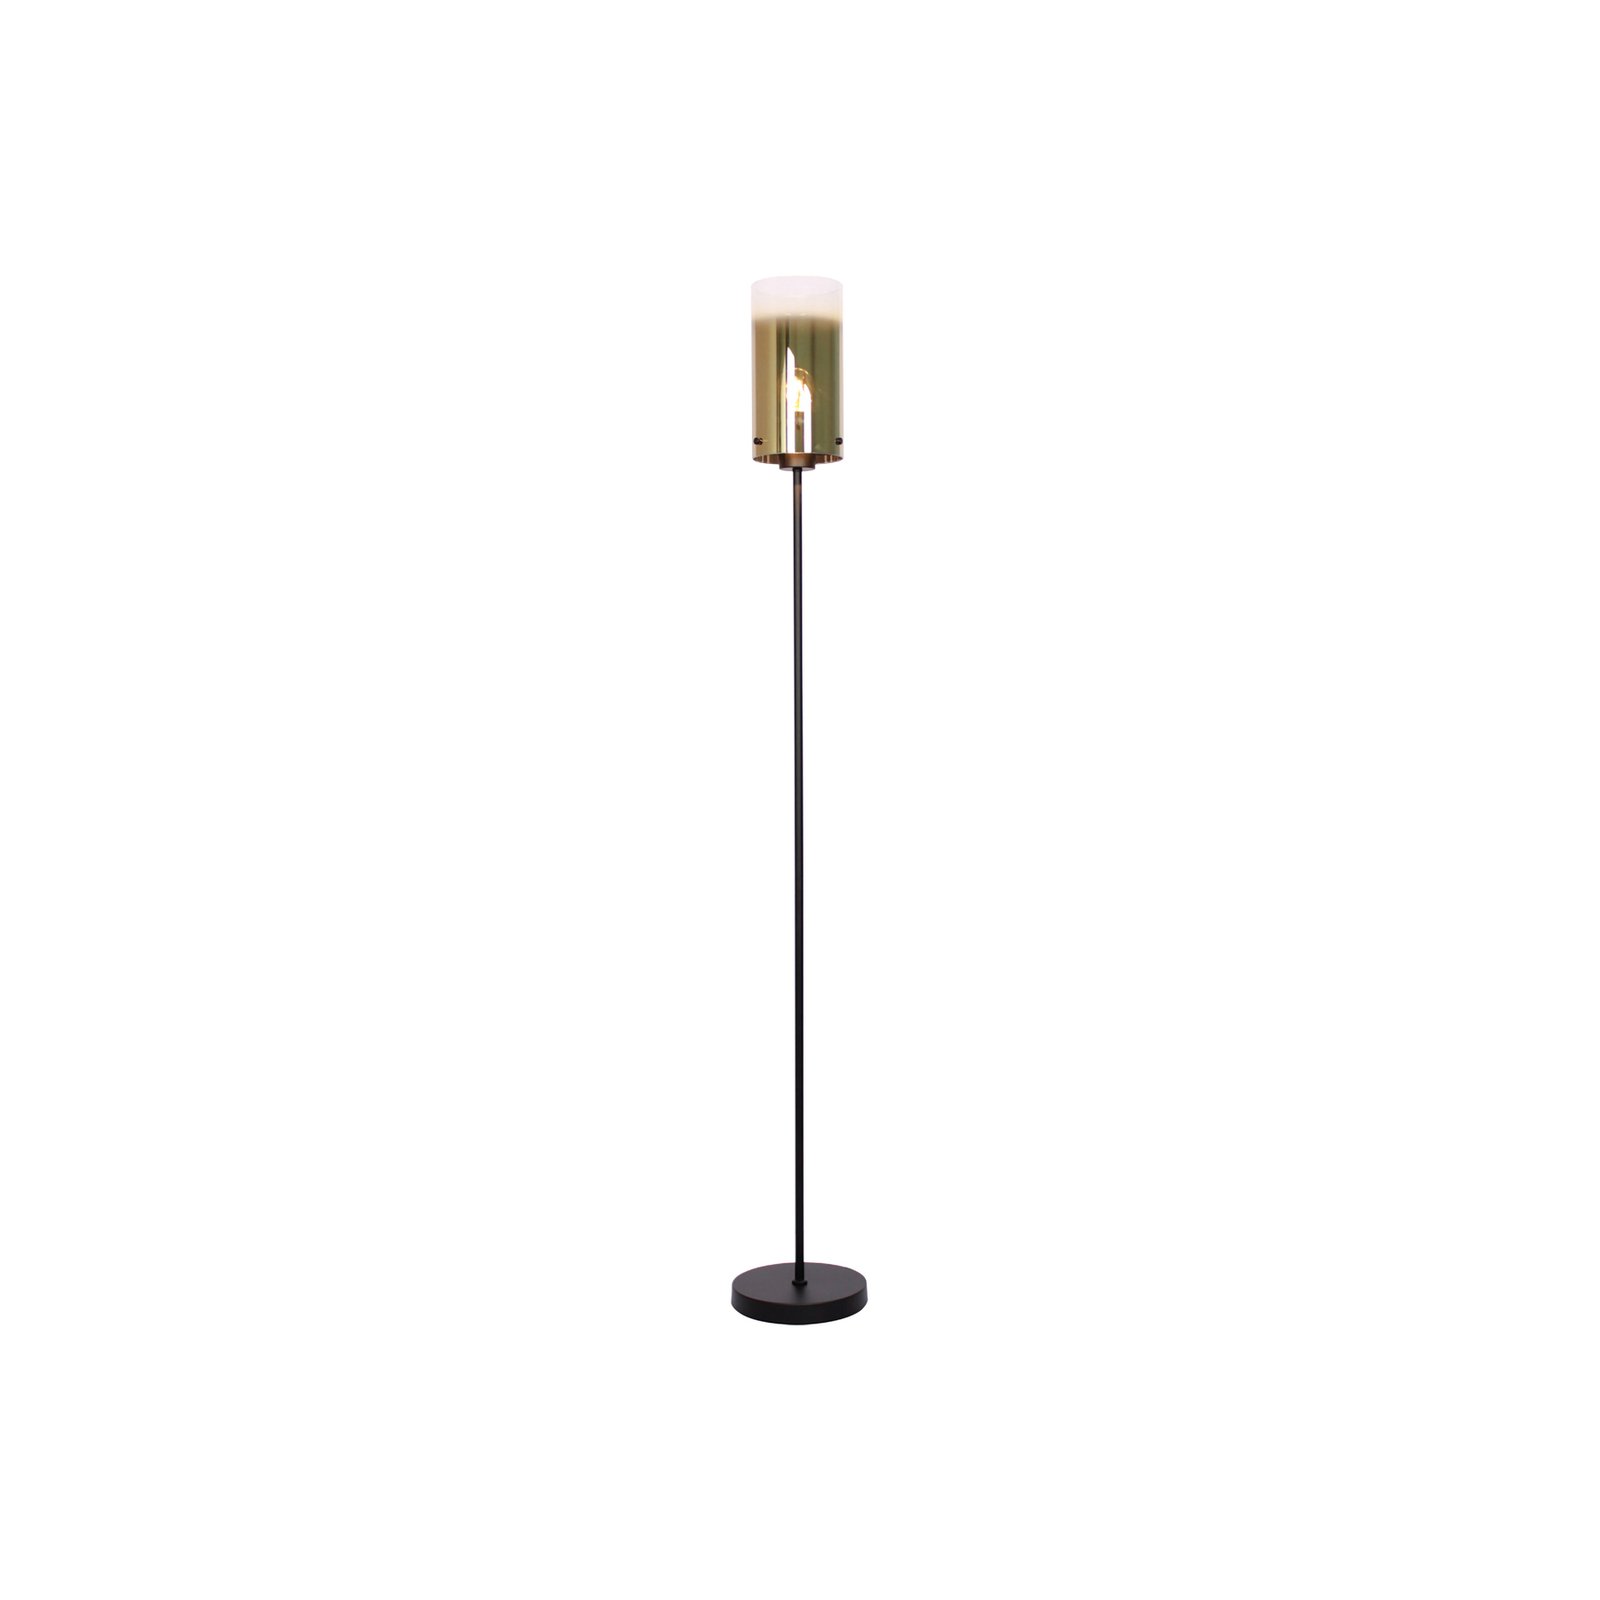 Ventotto vloerlamp, zwart/goud, hoogte 165 cm, metaal/glas